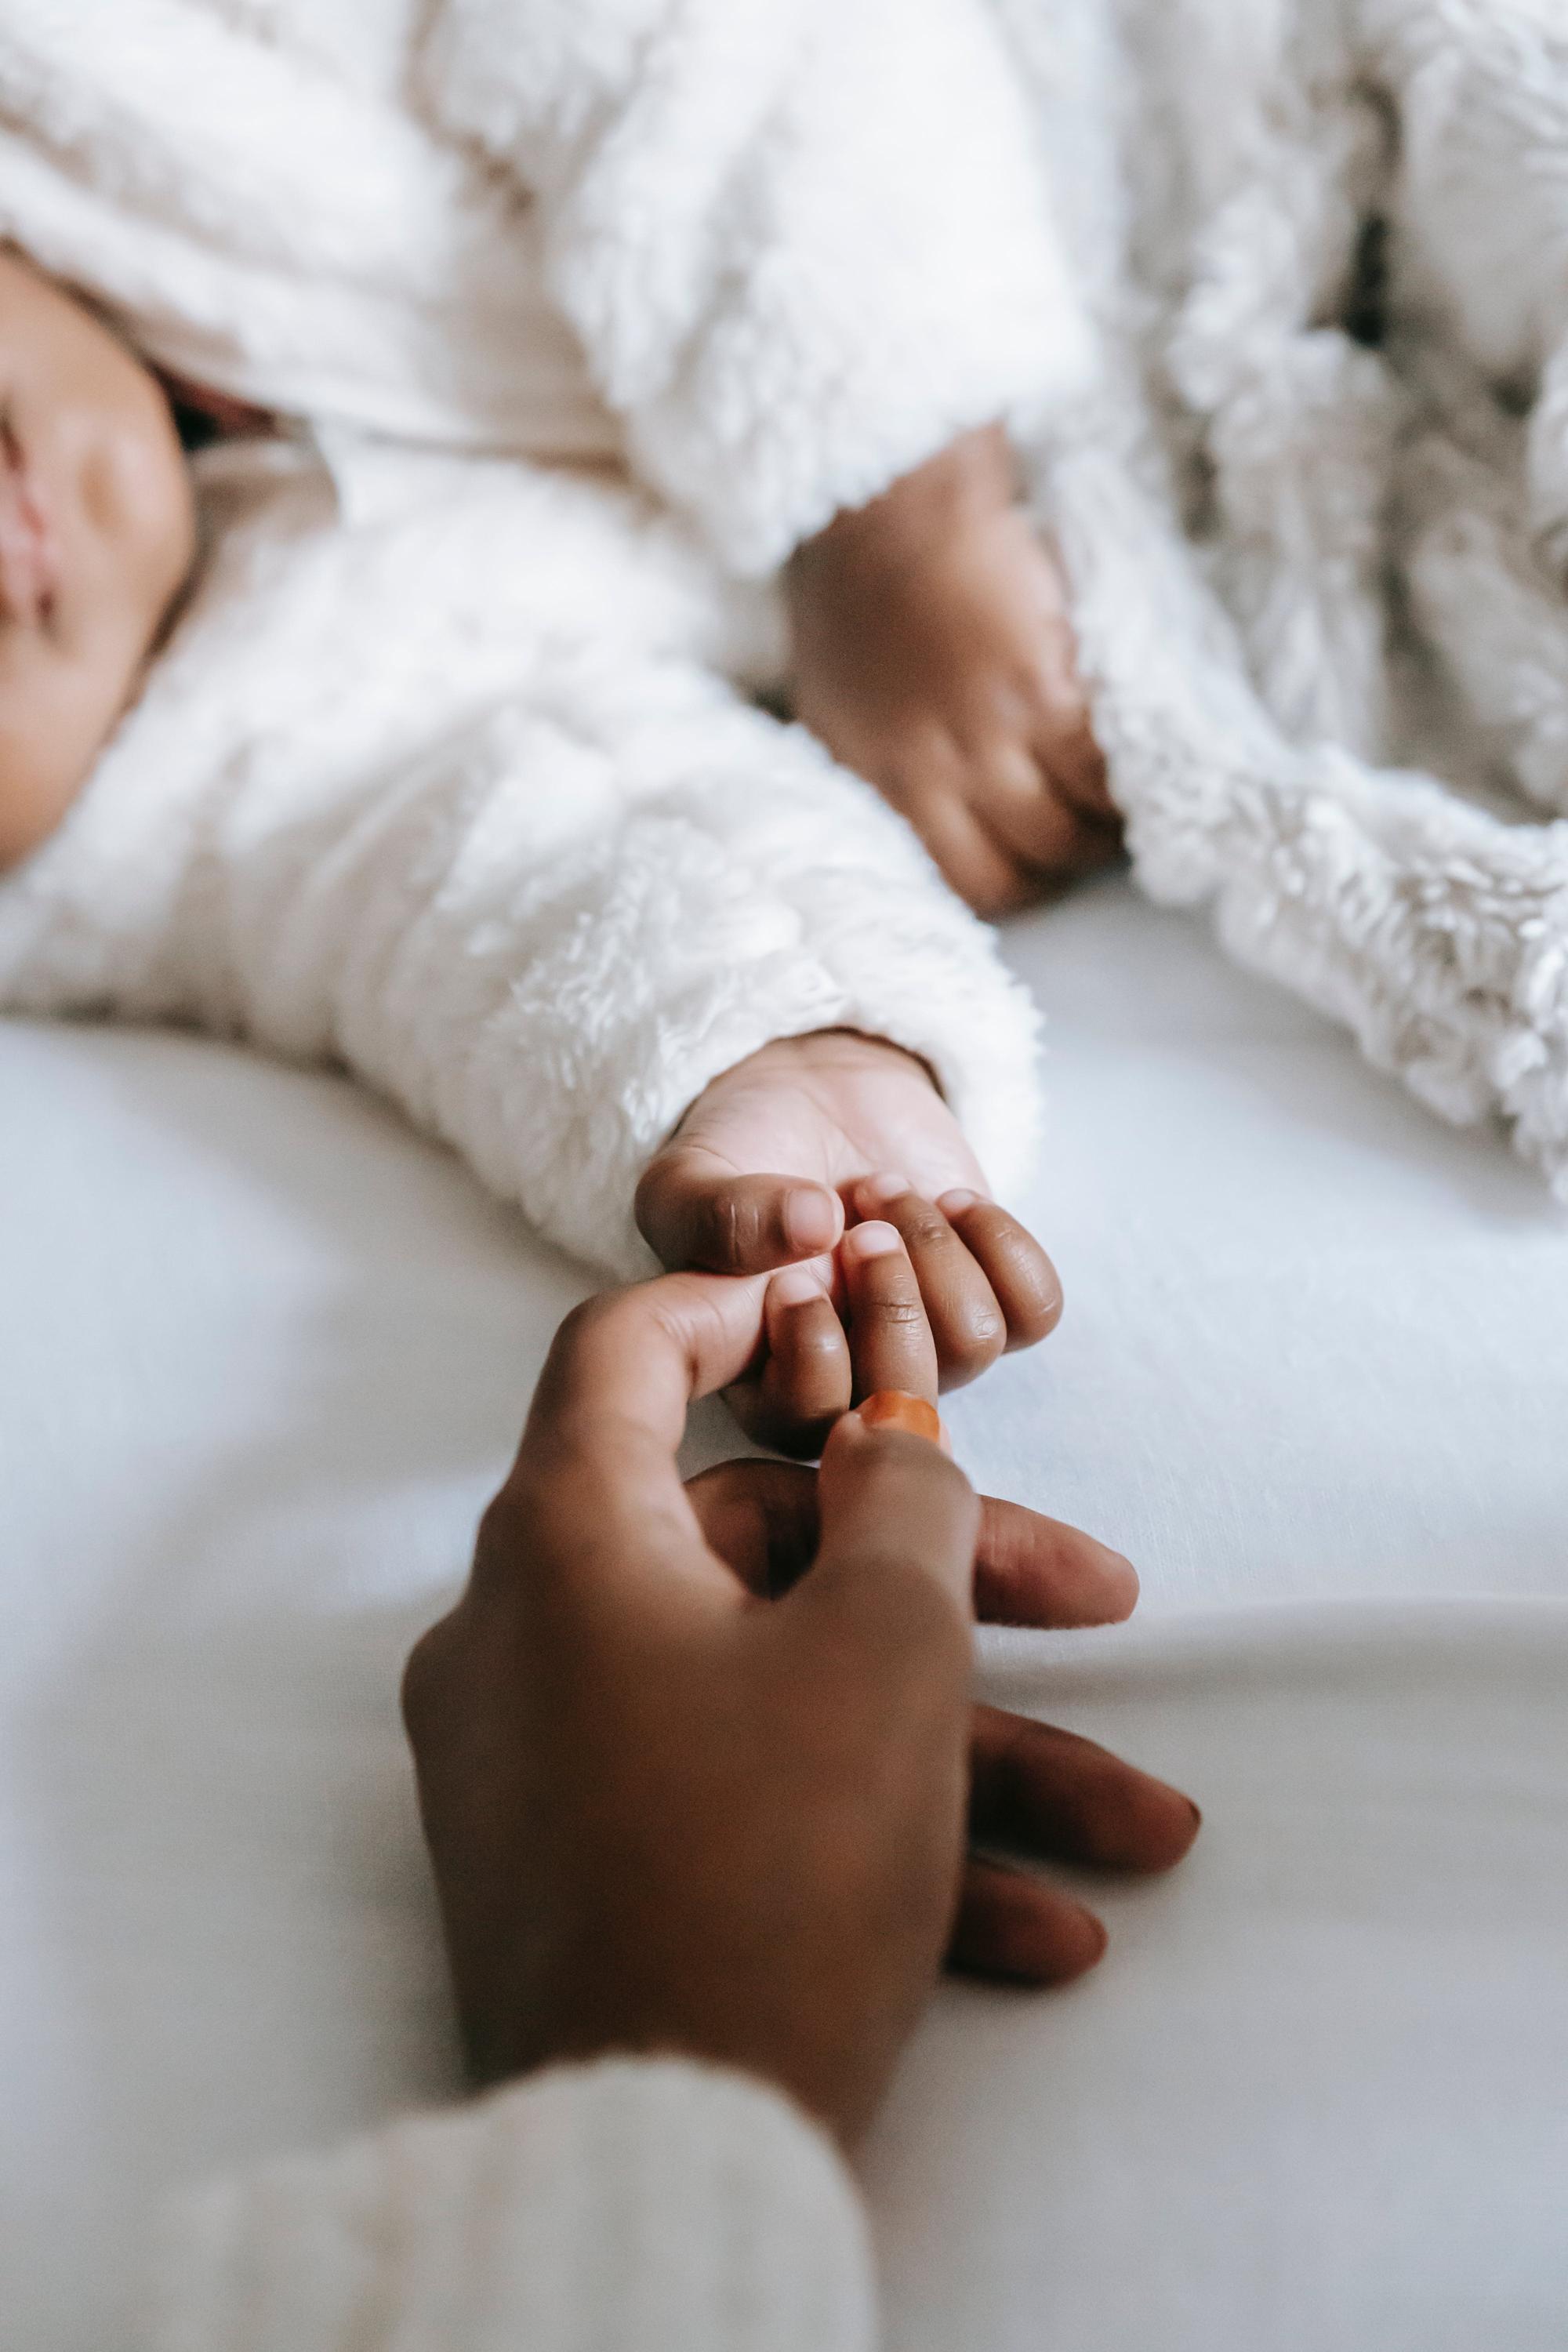 Sen niemowlęcia – ile i jak często